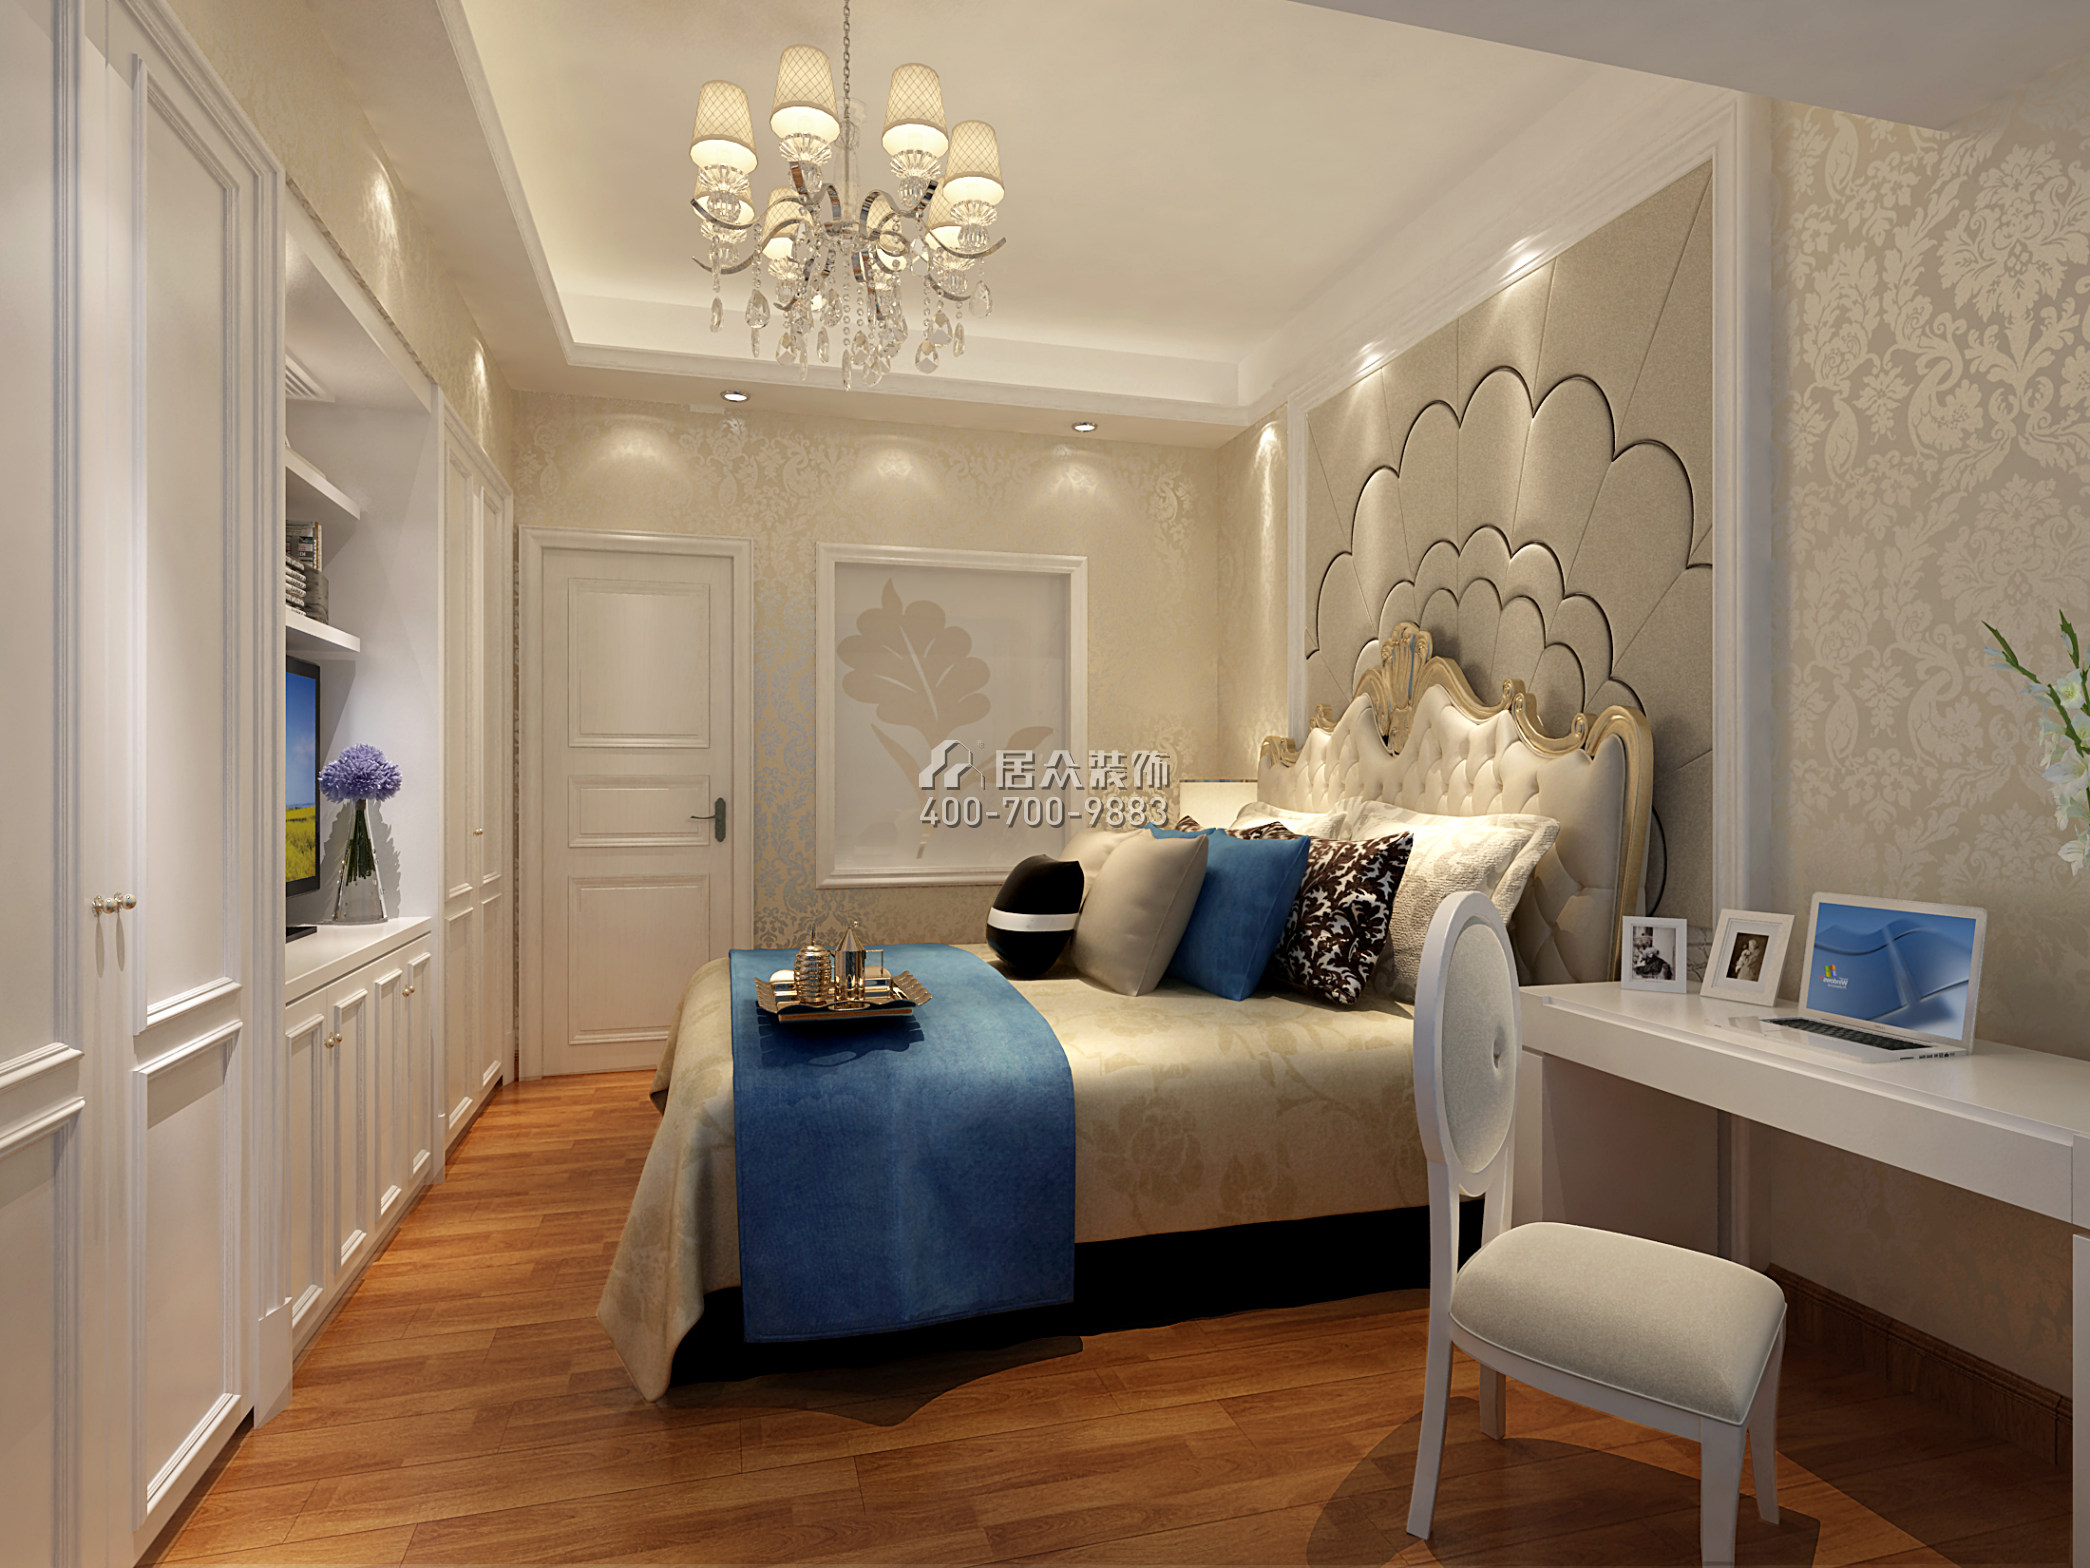 雅居乐剑桥郡245平方米中式风格平层户型卧室装修效果图